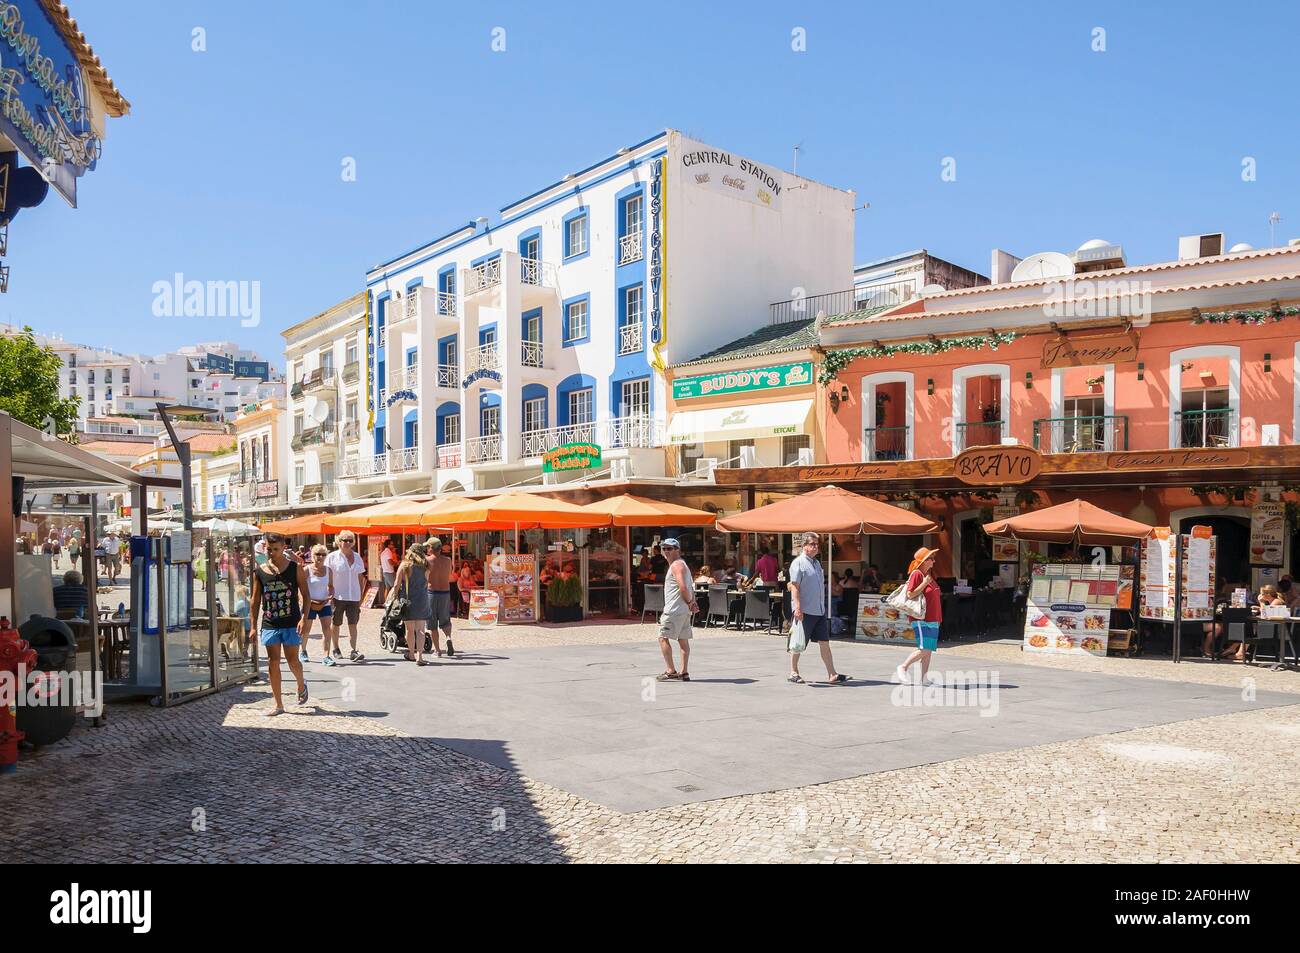 Albufeira, Portugal - 3. September 2014: Touristen besuchen die Stadt Platz mit Geschäften, Bars und Restaurants in den Touristen Stadt Albufeira an der Algarve Regi Stockfoto